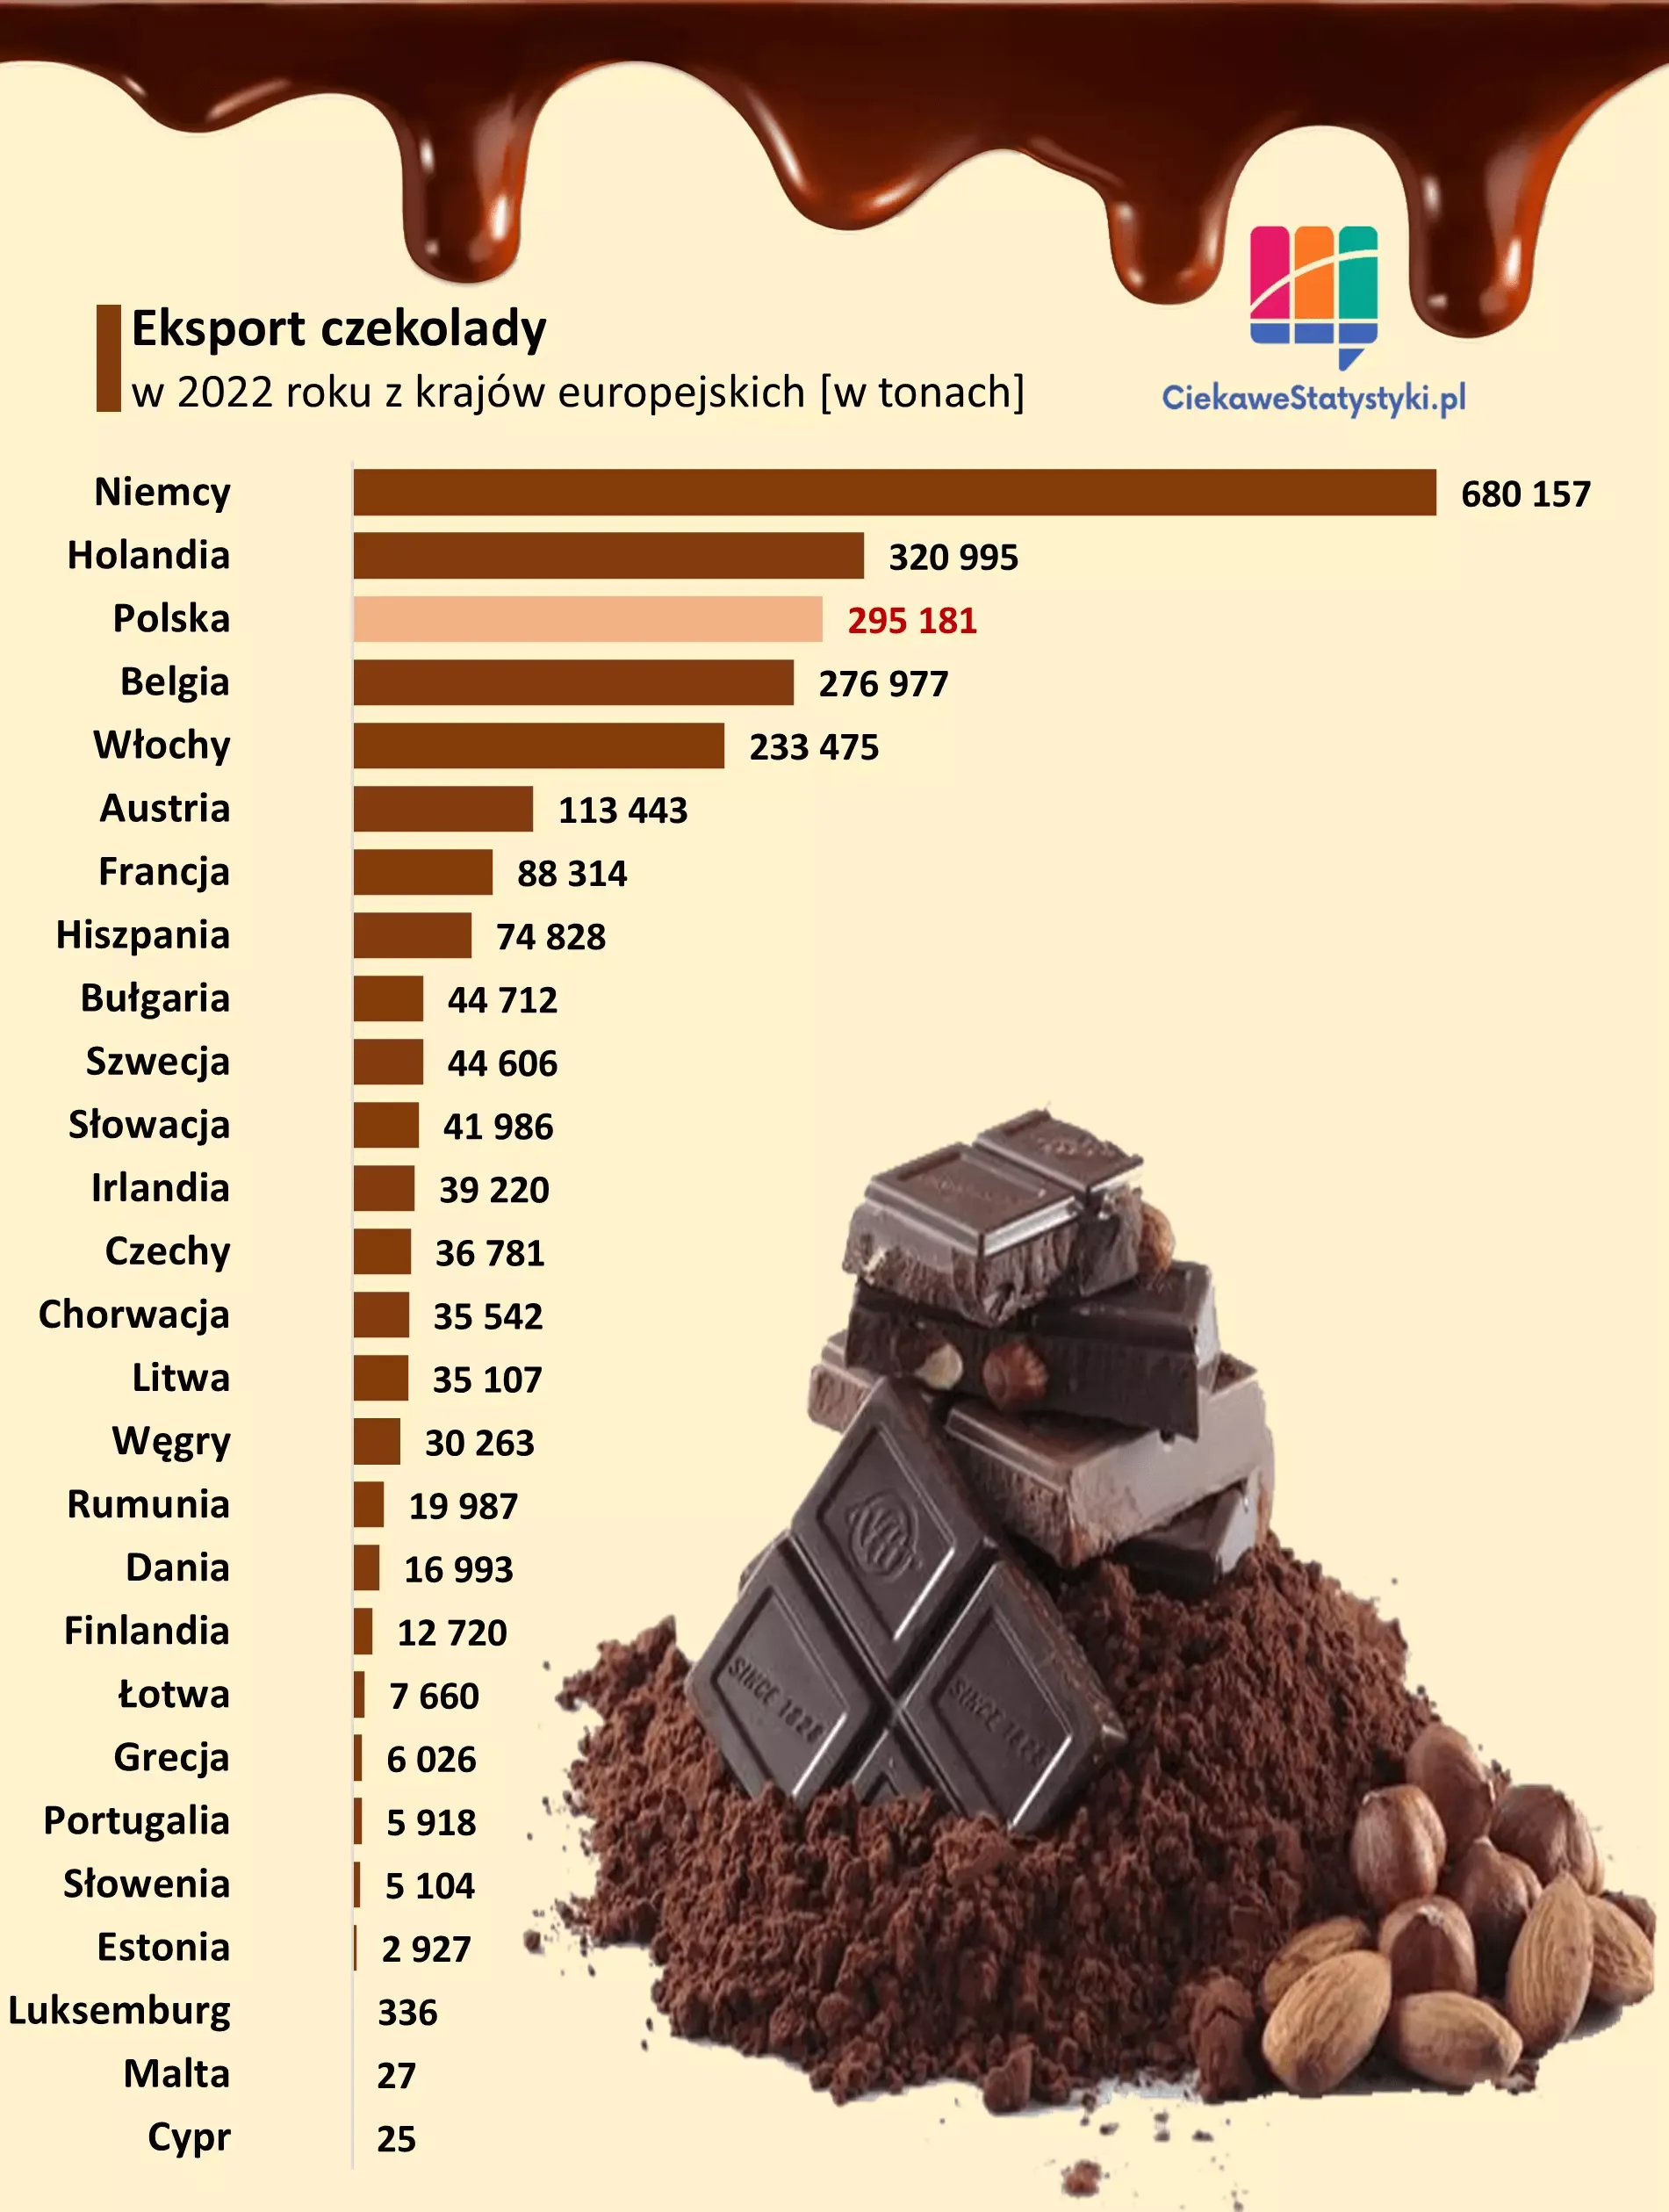 Wykres przedstawia ile czekolady i produktów czekoladowych eksportuje Polska i inne kraje europejskie